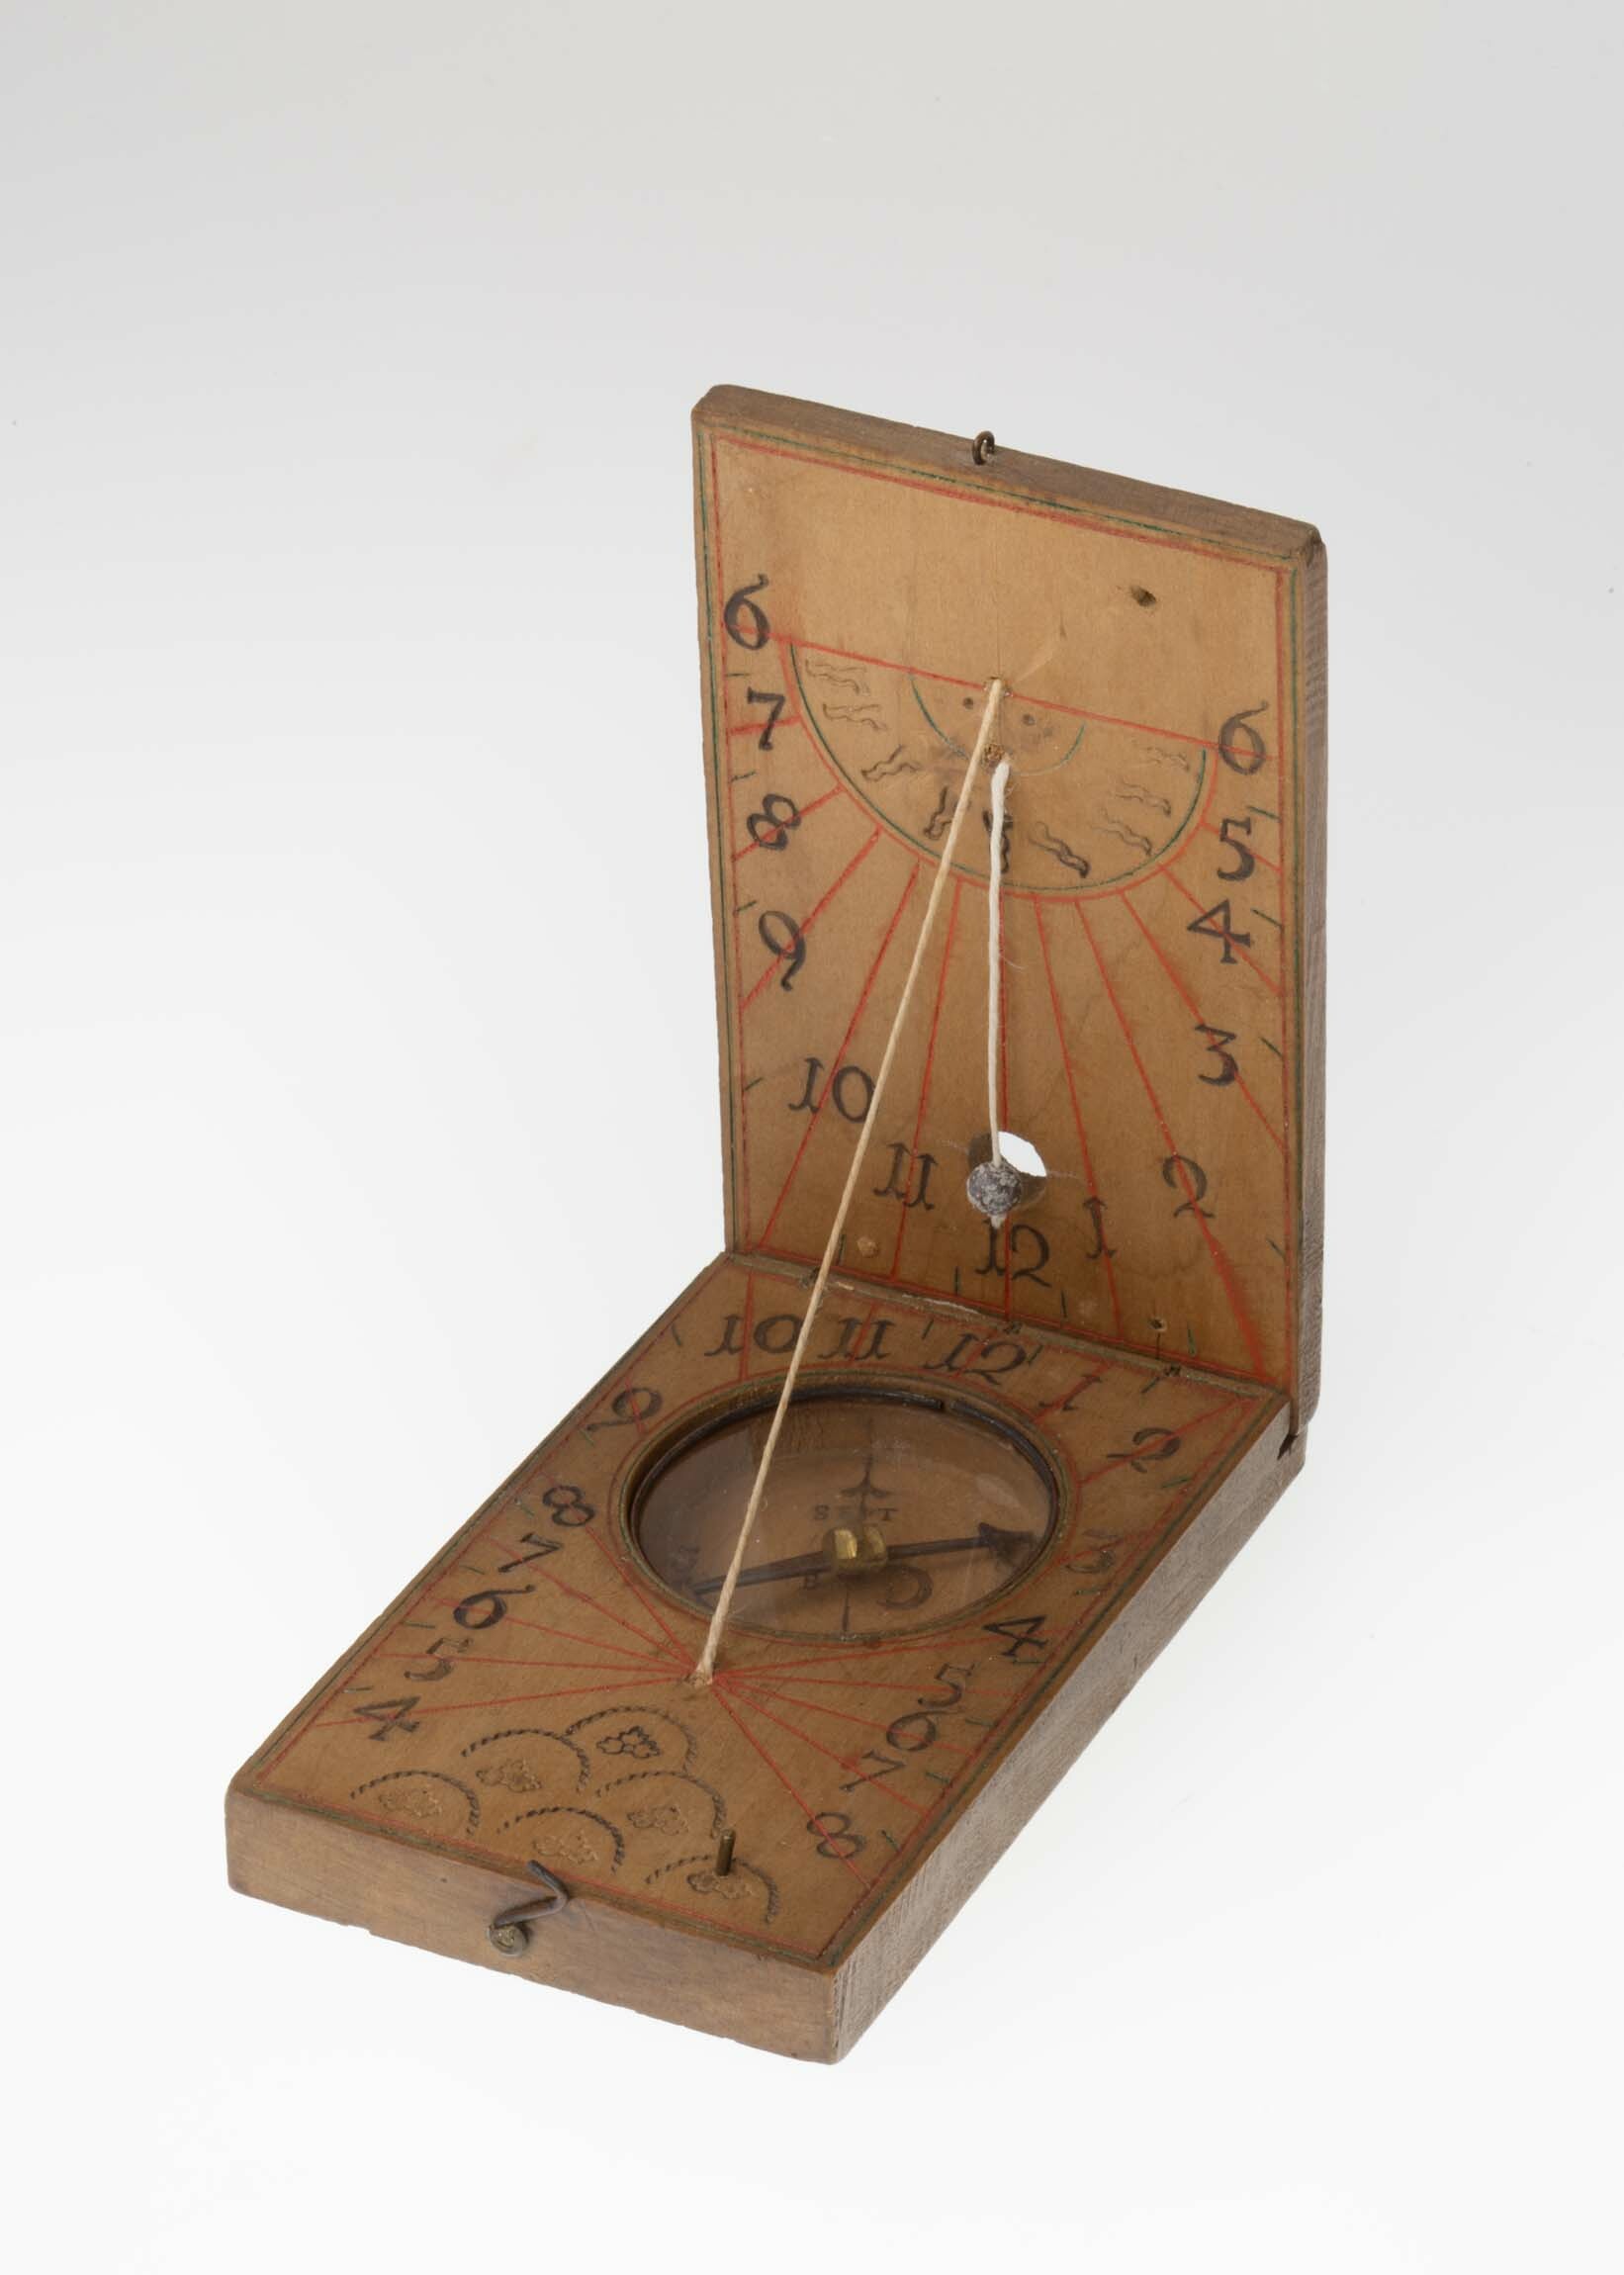 Klappsonnenuhr, wohl Deutschland, 18. Jahrhundert oder später (Deutsches Uhrenmuseum CC BY-SA)